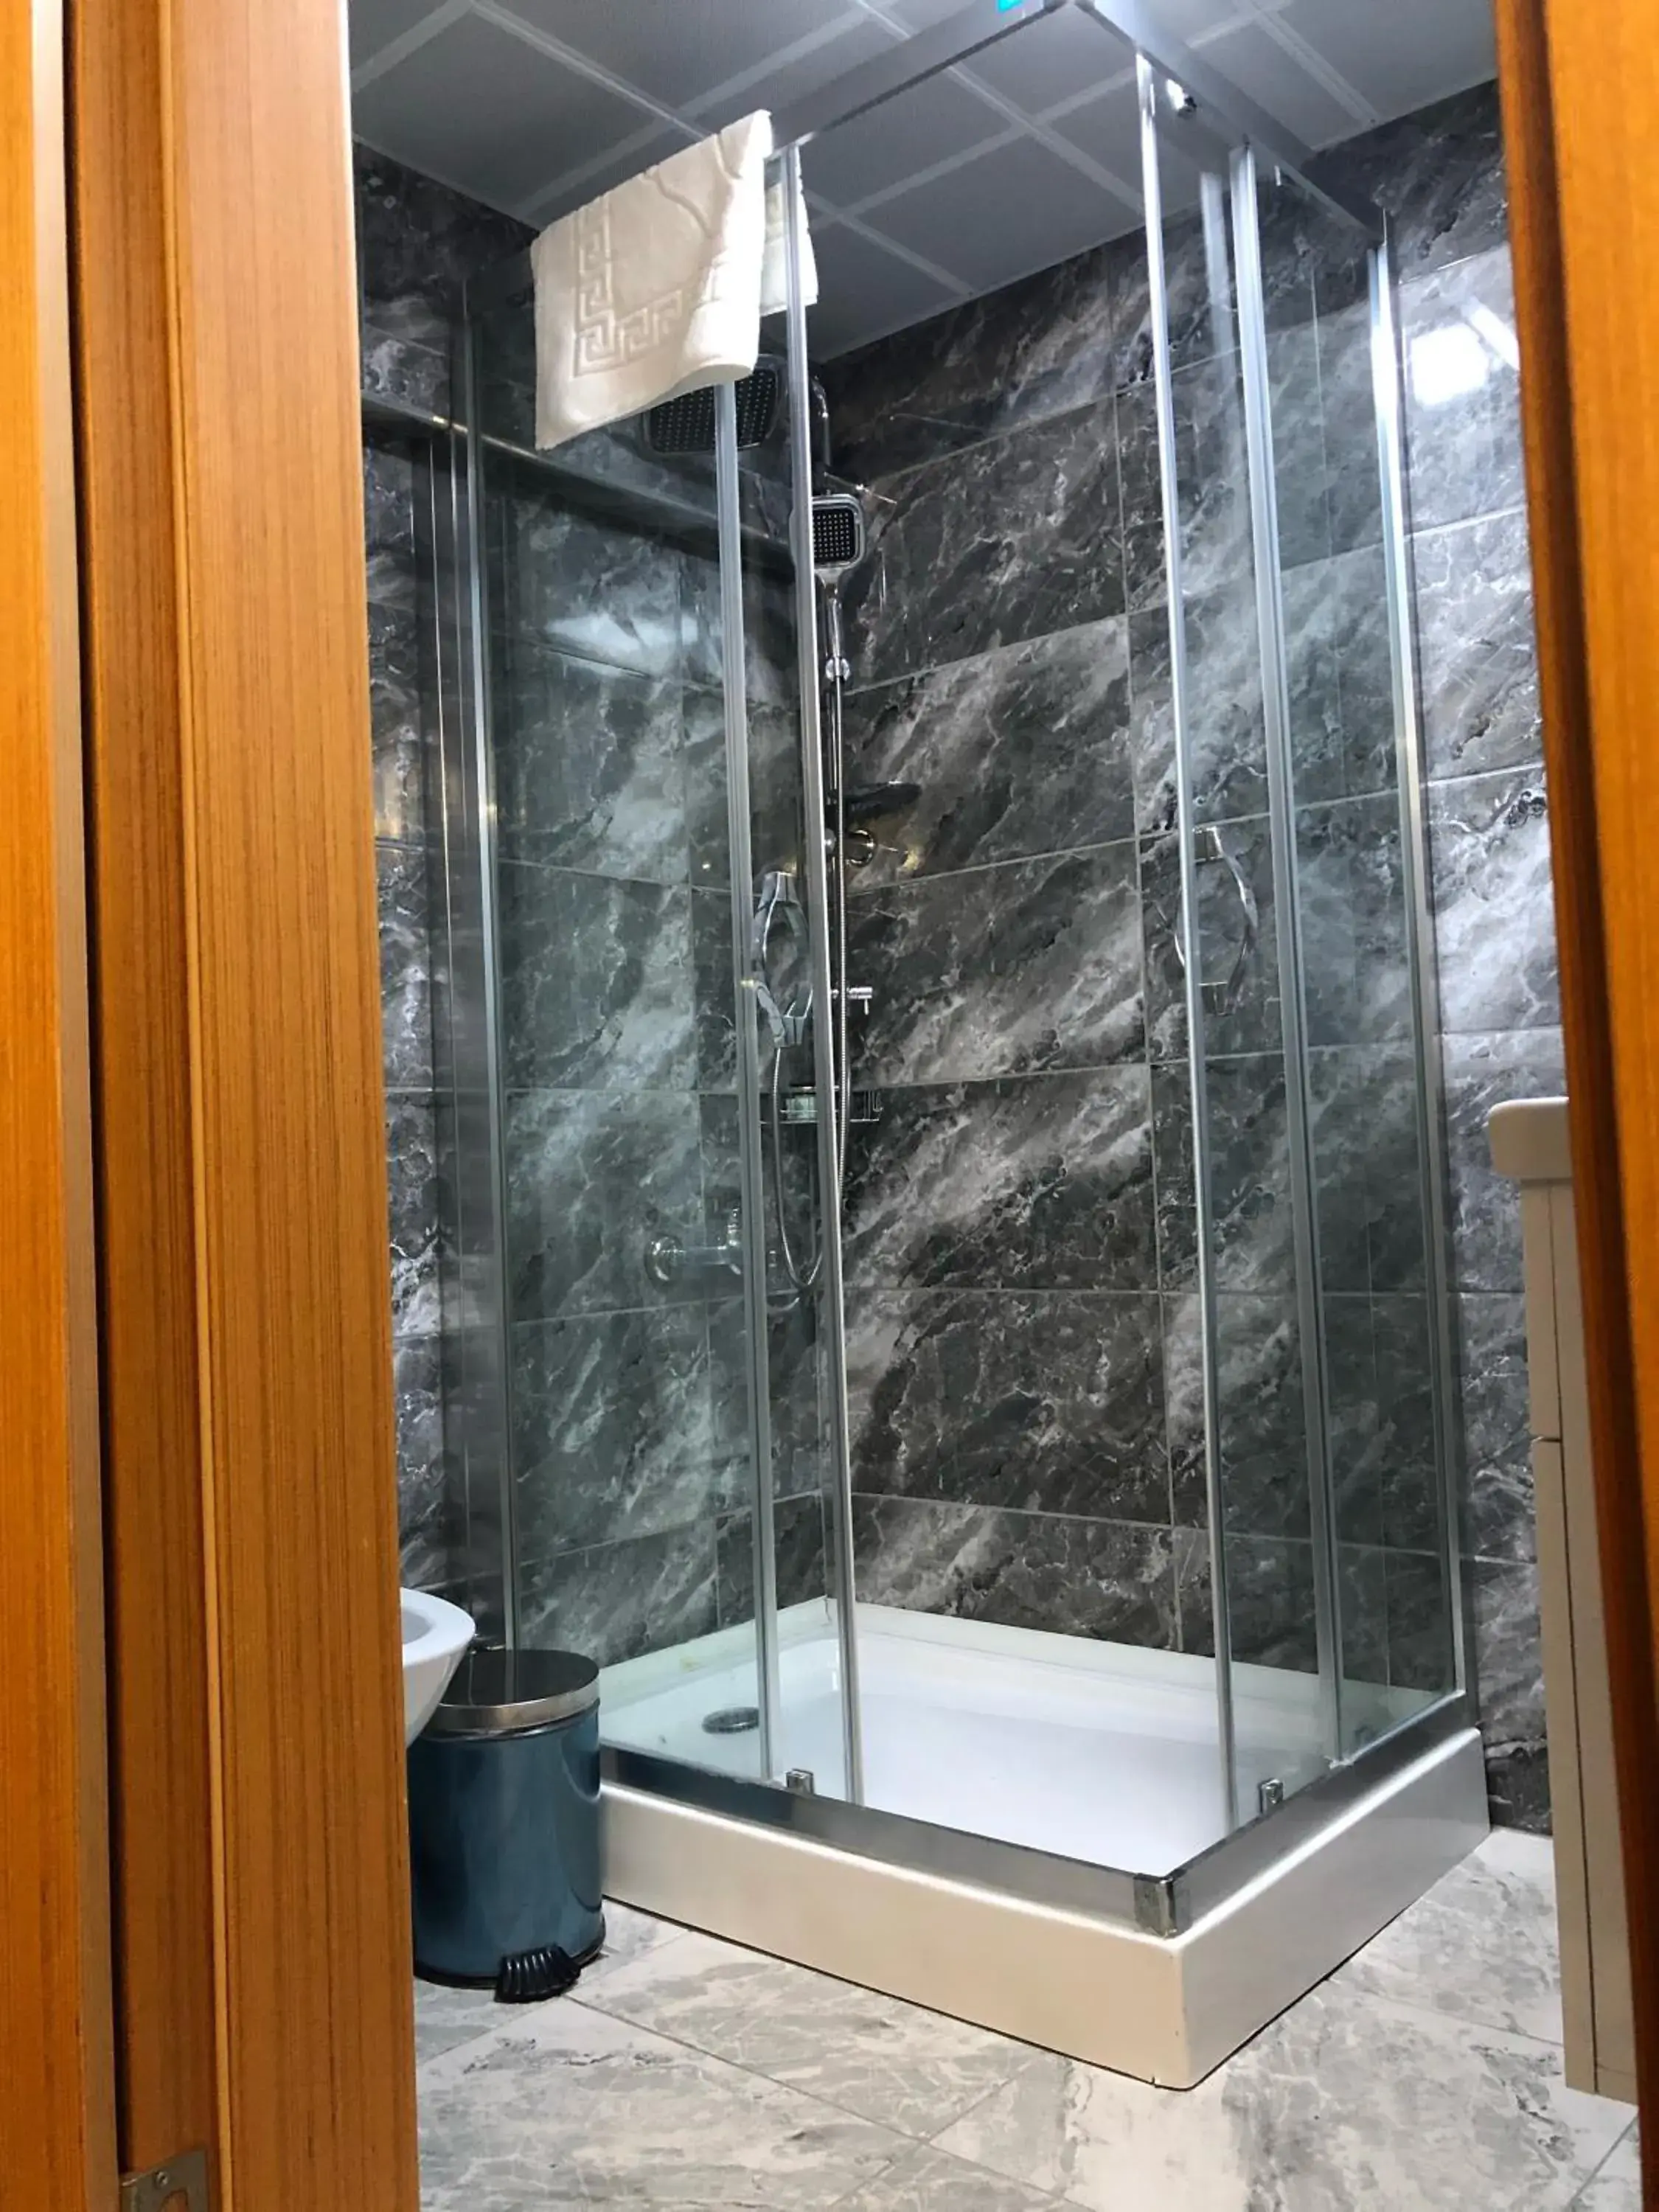 Shower, Bathroom in Turk Art Hotel